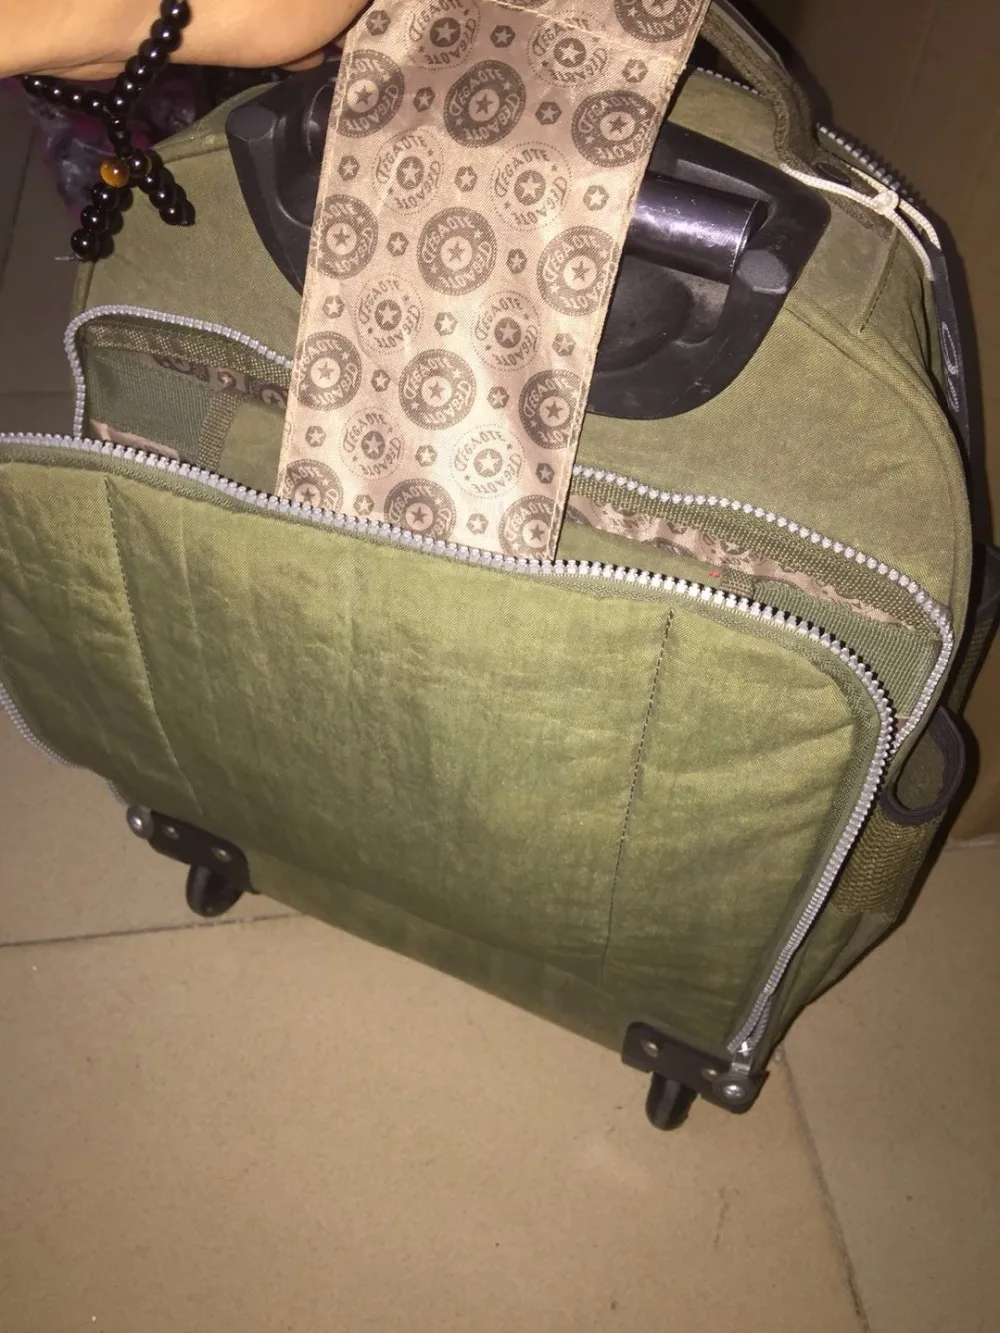 Дорожная сумка на колесиках с двойным использованием, сумка для путешествий на колесиках, чемодан для путешествий, нейлоновый дорожный рюкзак на колесиках, сумка для путешествий